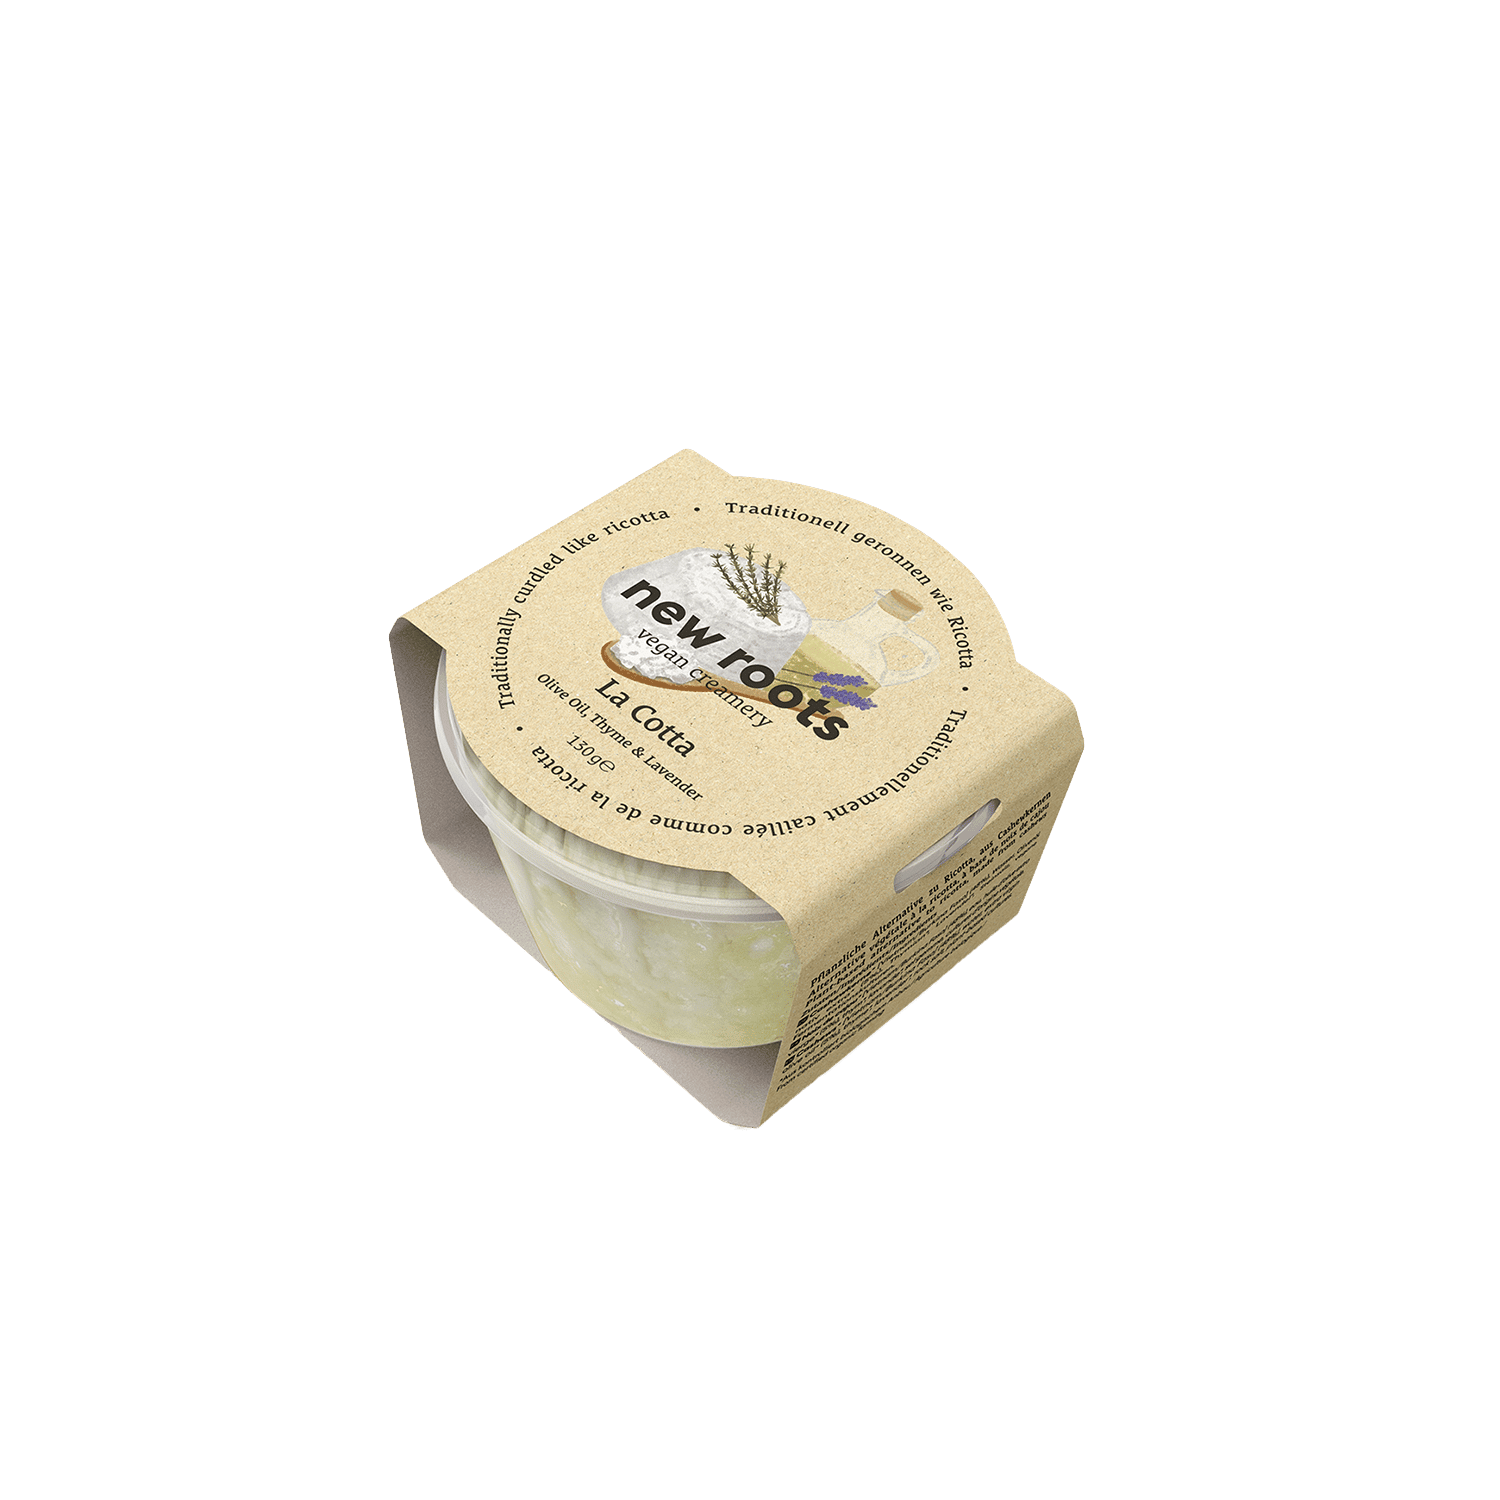 Vegan Creamery Olivenöl, Thymian & Lavendel Alternative zu Ricotta, BIO, 130g